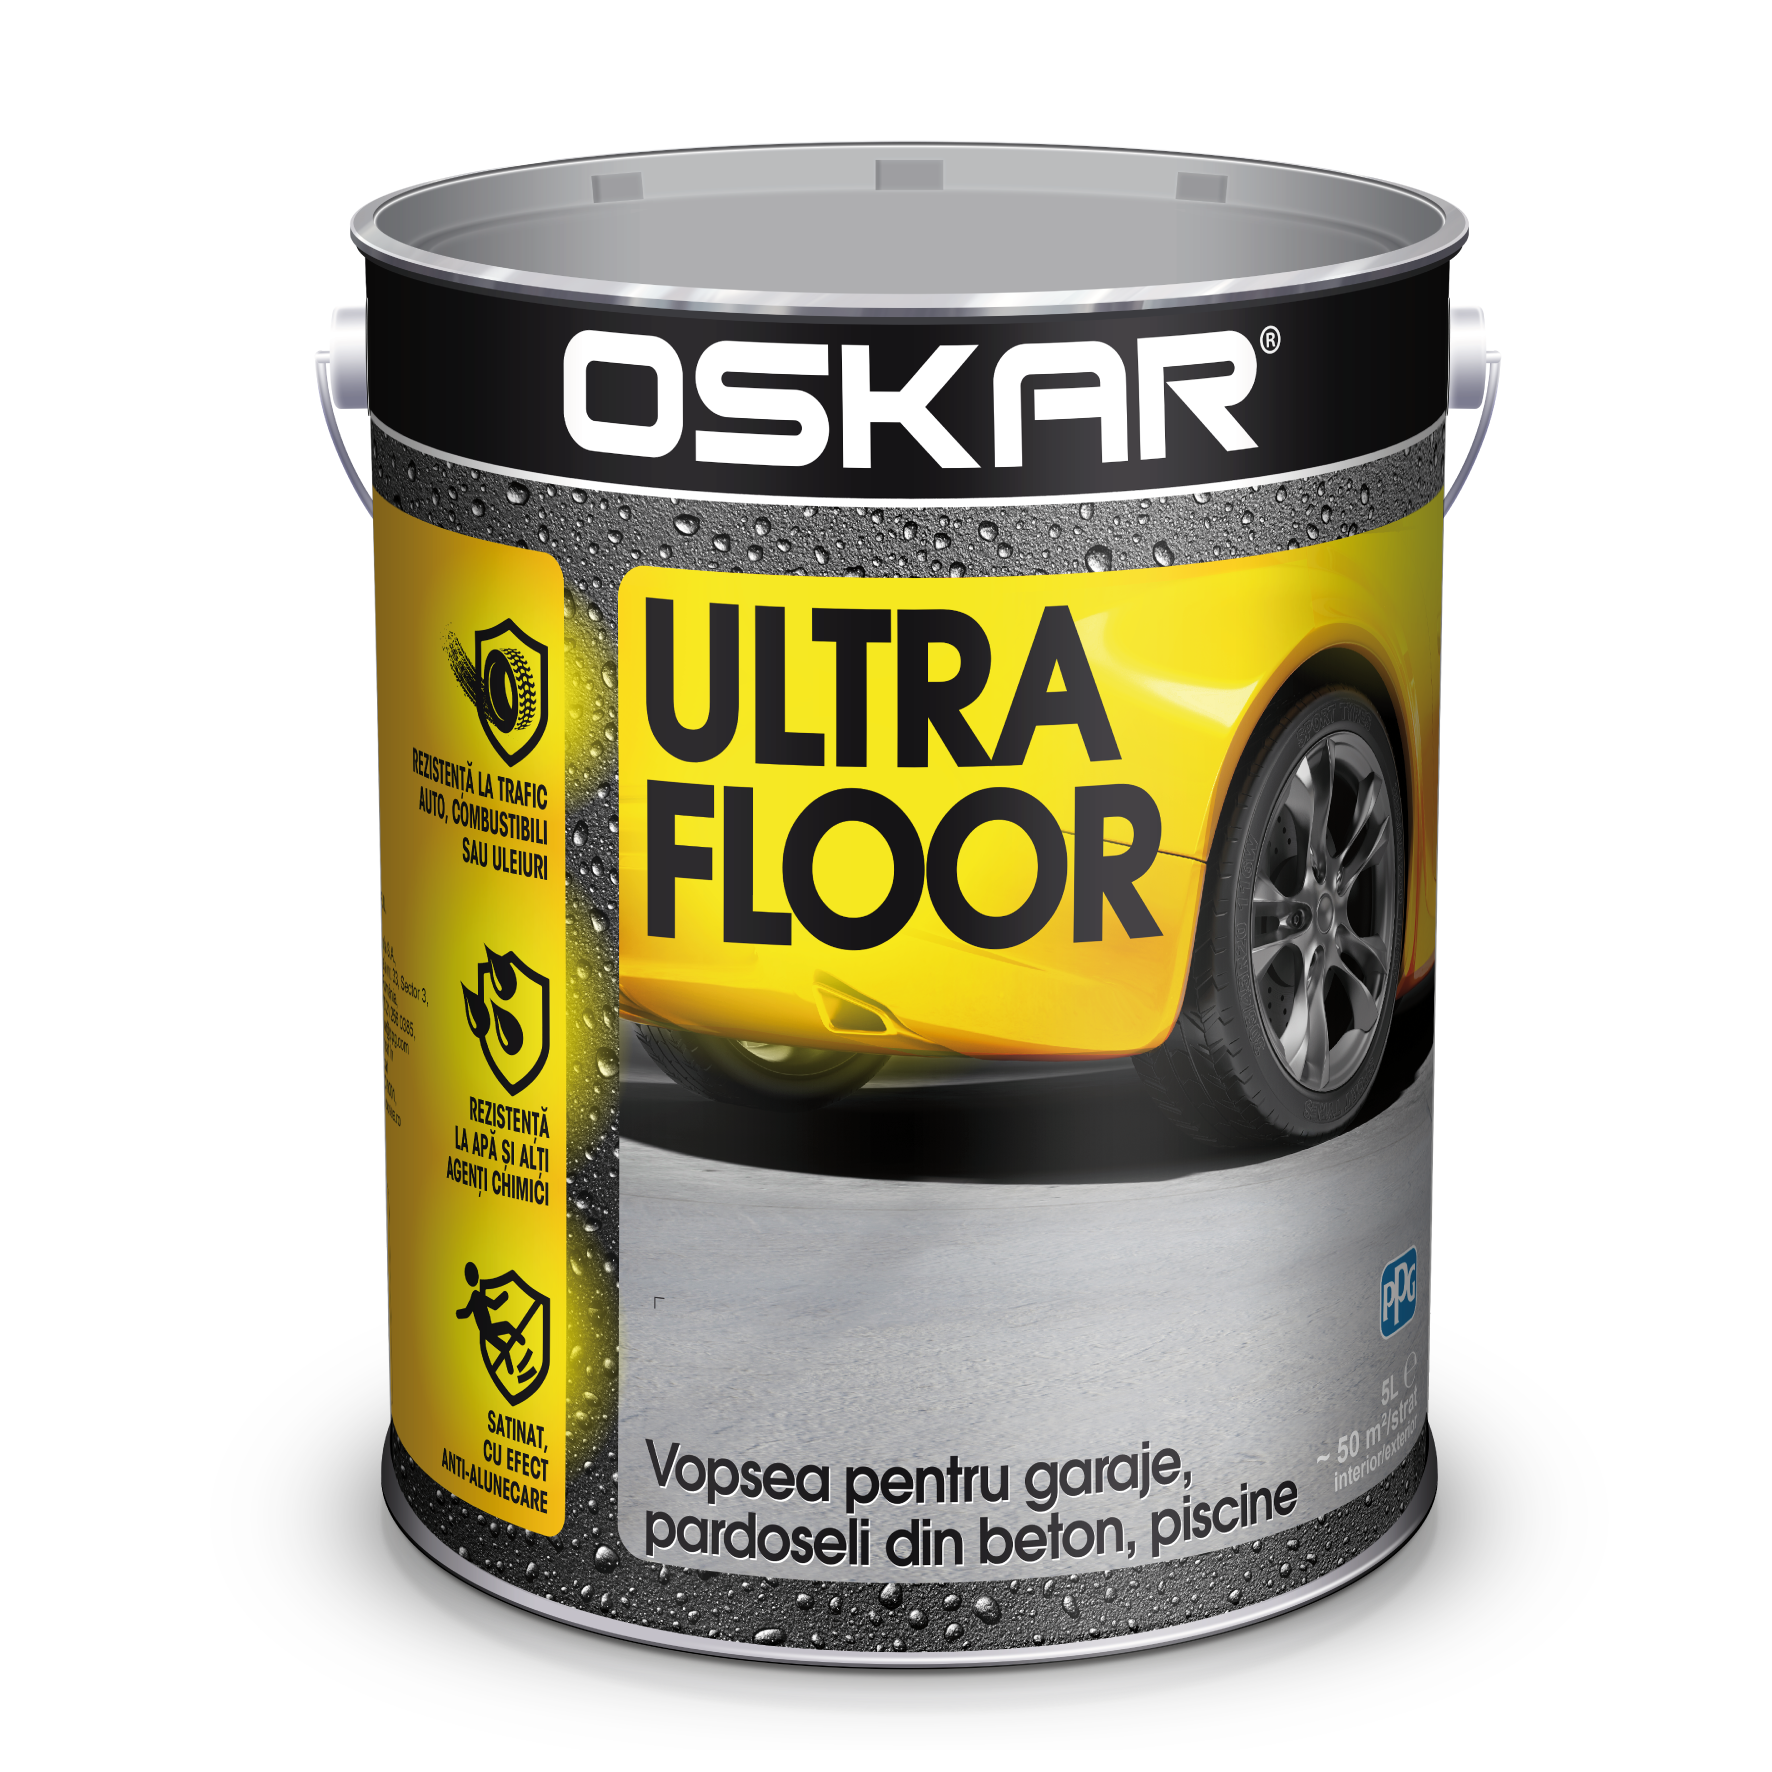 Vopsea beton Oskar Ultra Floor, cement grey, interior/exterior, 5 l acoperis